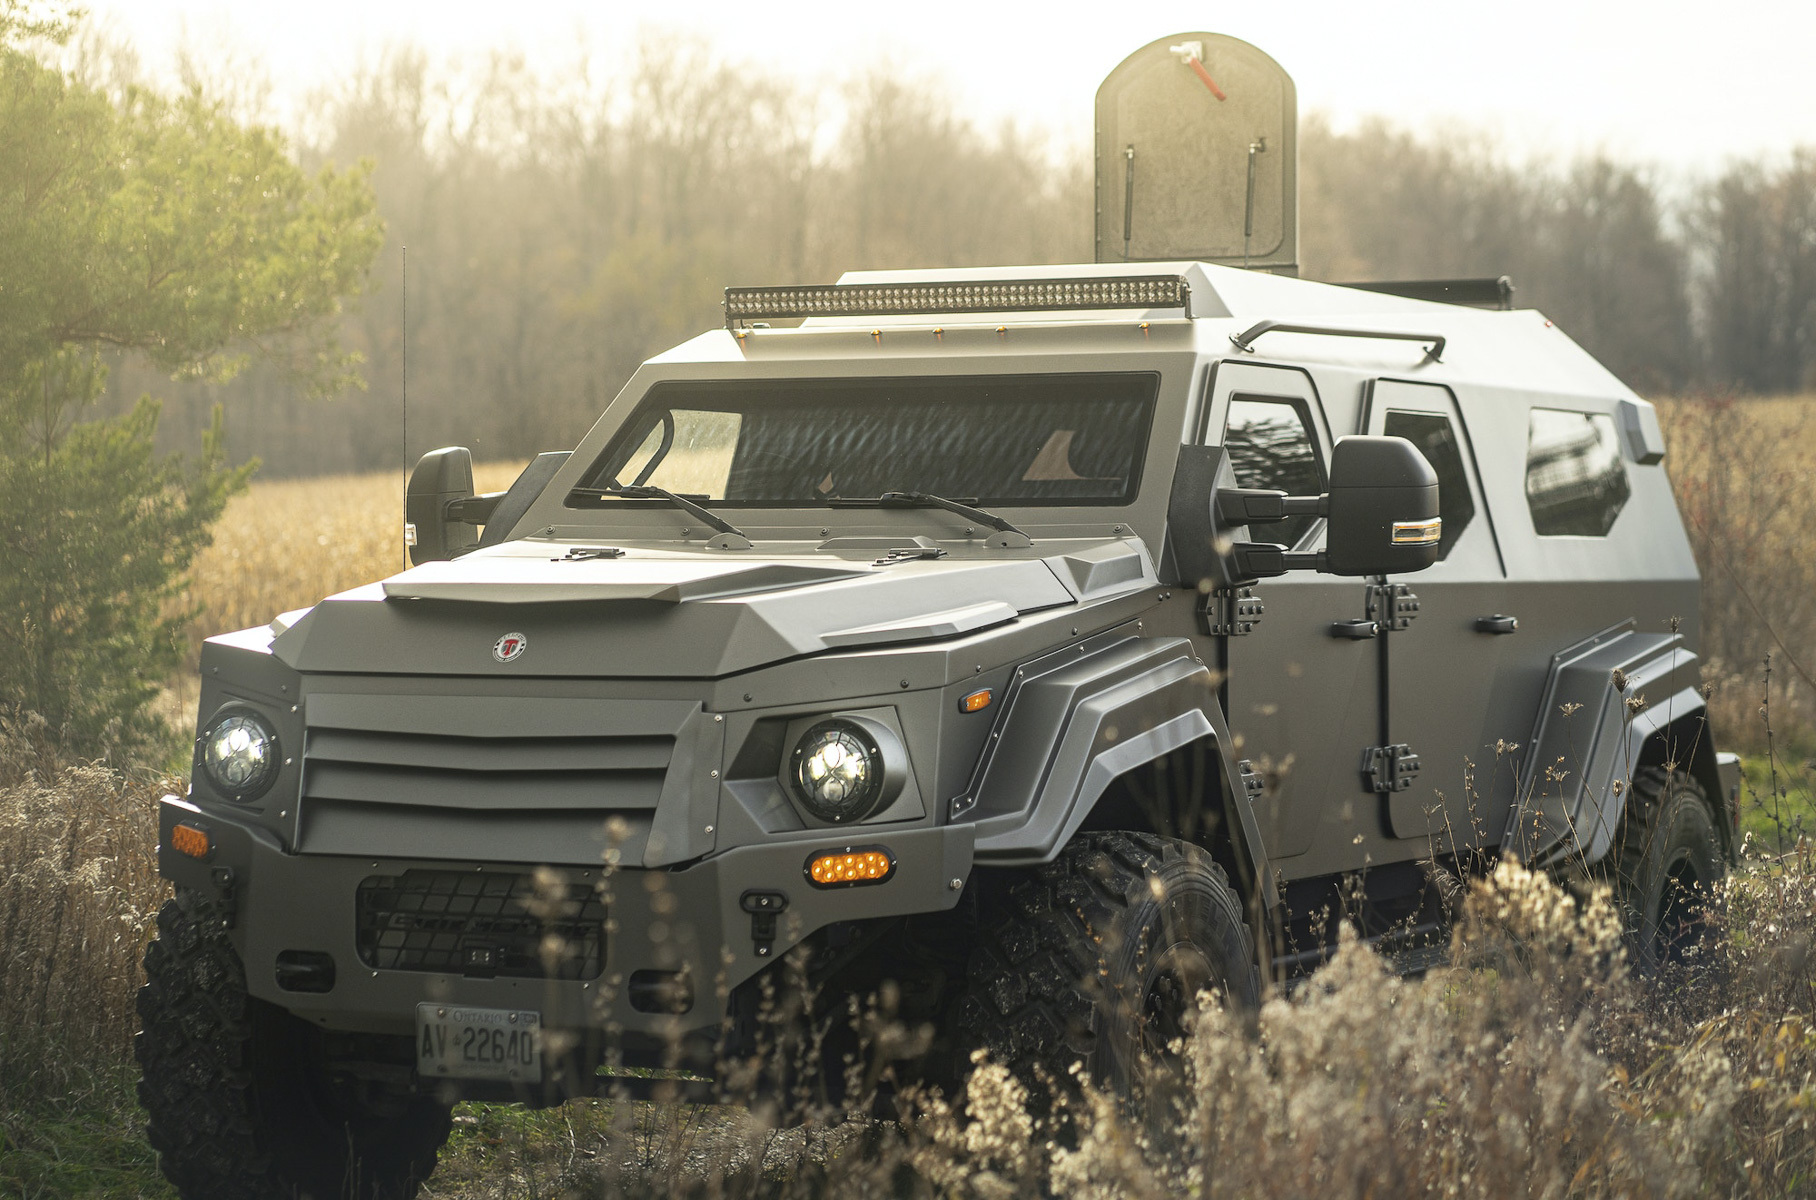 Военный суперброневик на базе Ford F-550 XL пустят с молотка за 11 миллионов рублей